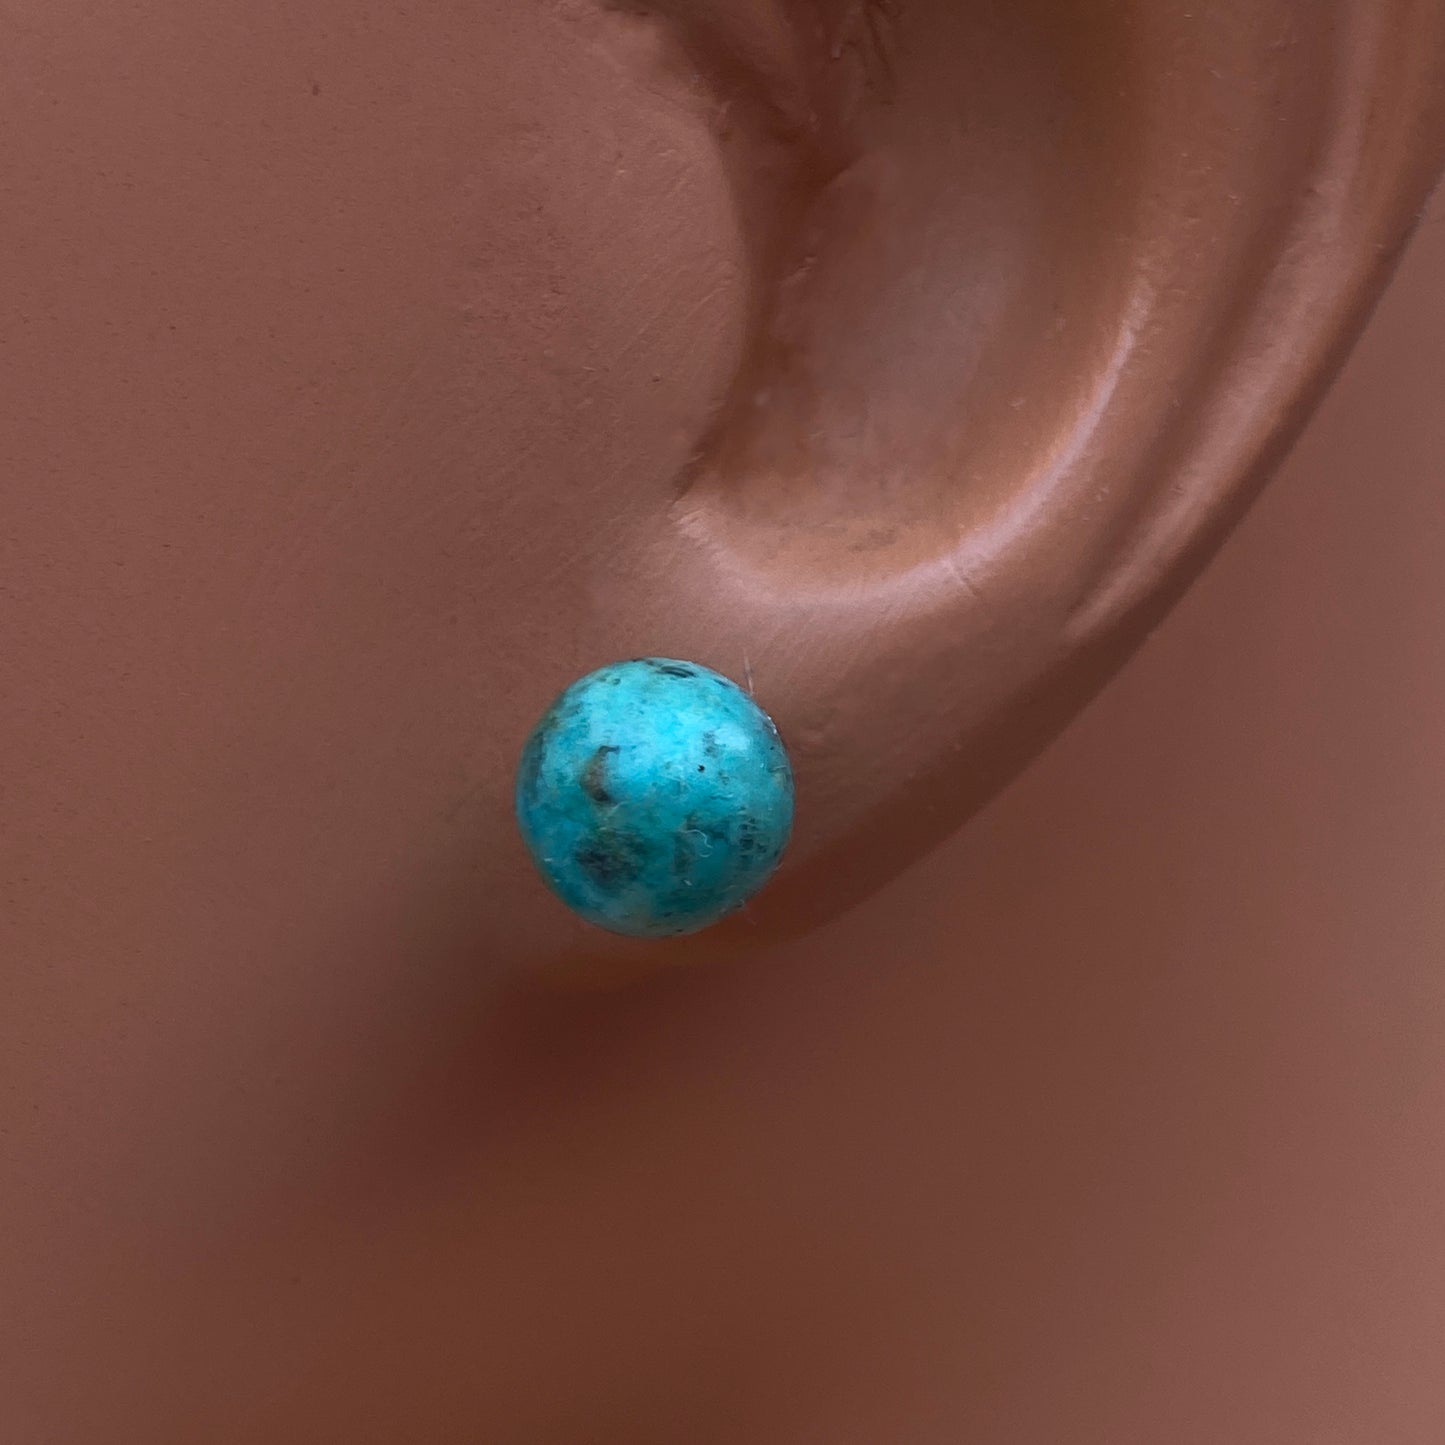 African Turquoise gemstone stud earrings